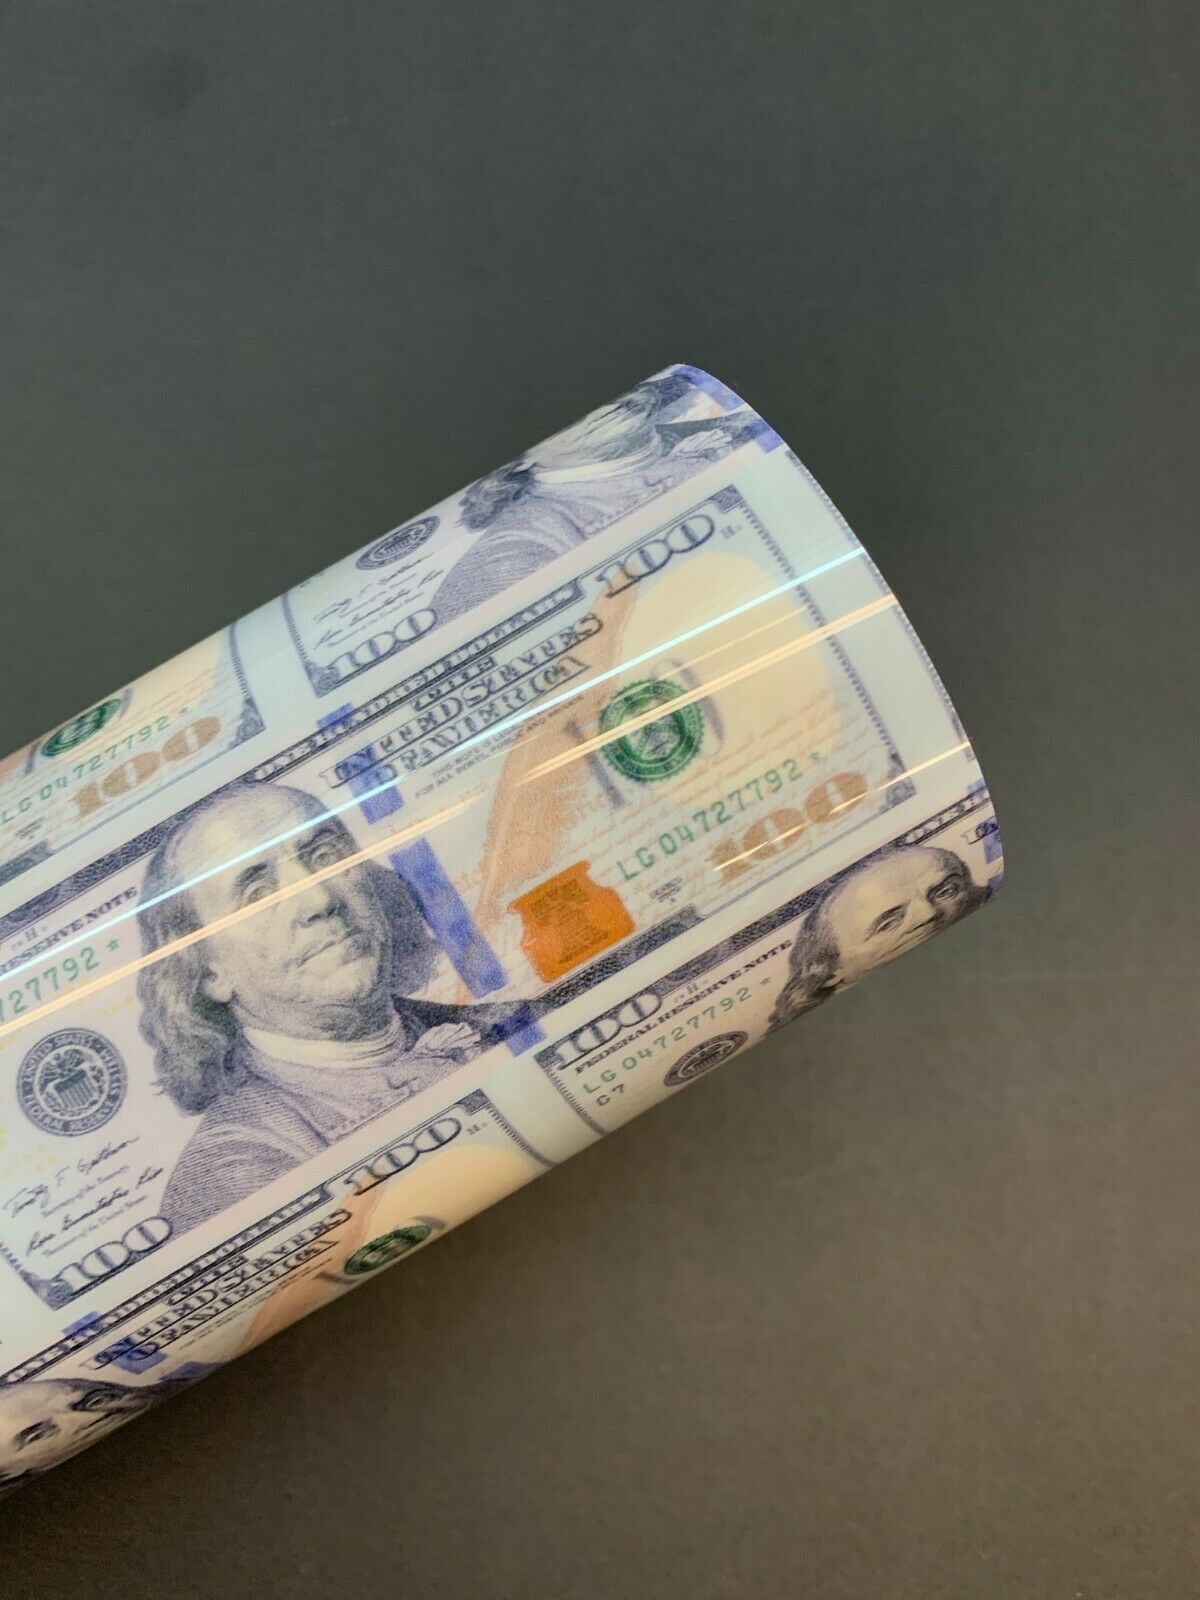 Nuevo Benjamín - Billetes de un dólar HTV